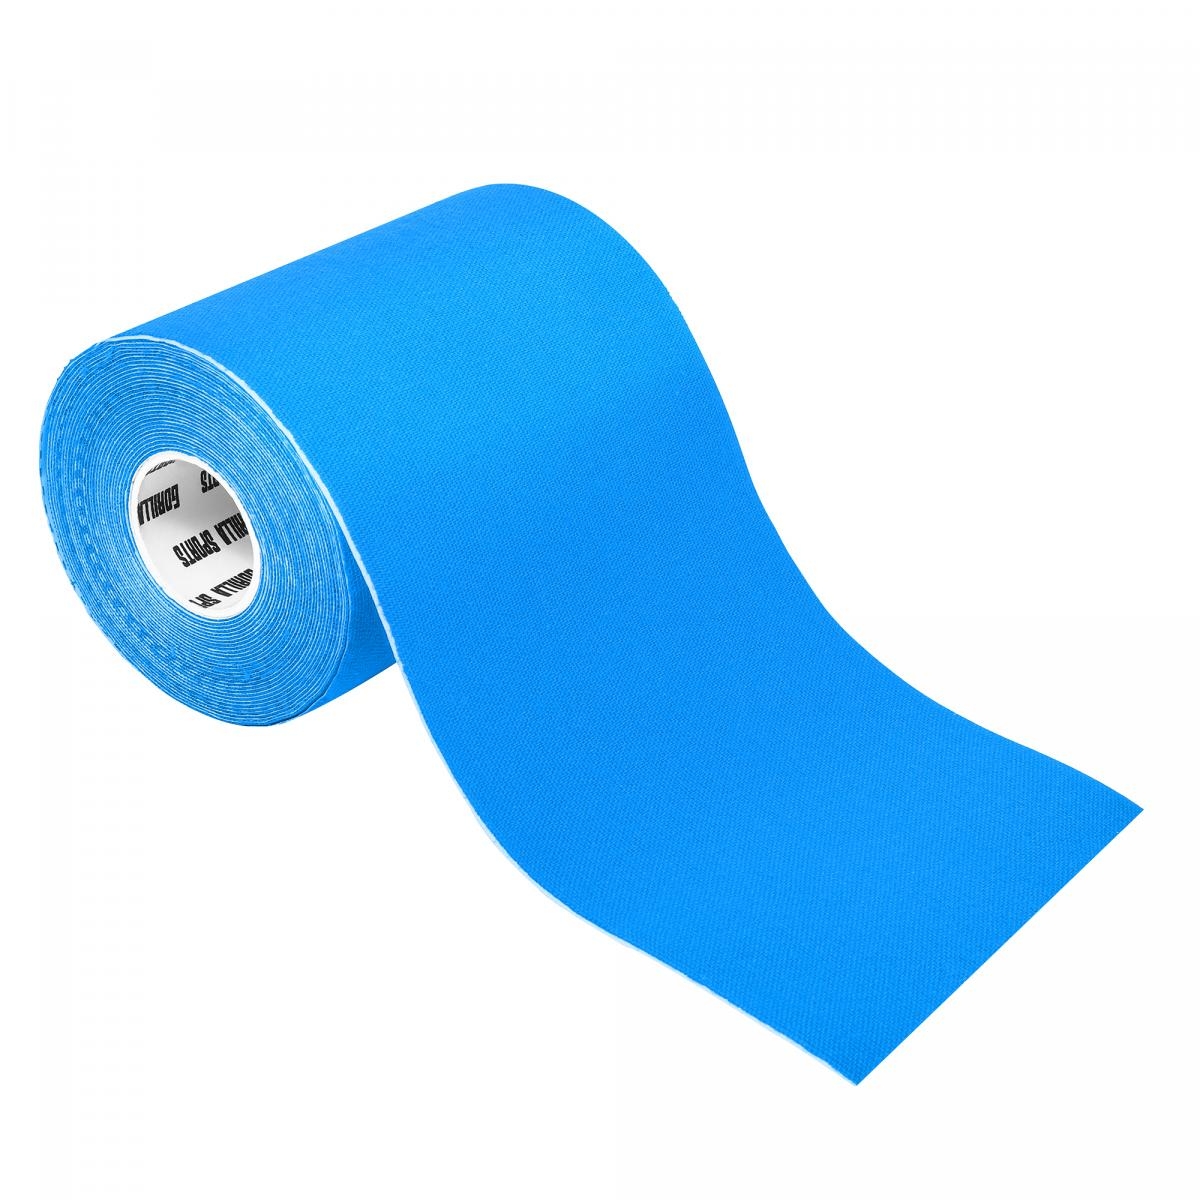 Bande de kinÃ©siologie bleue pÃ©trole - rouleau de 5 m - Largeur : 10 cm